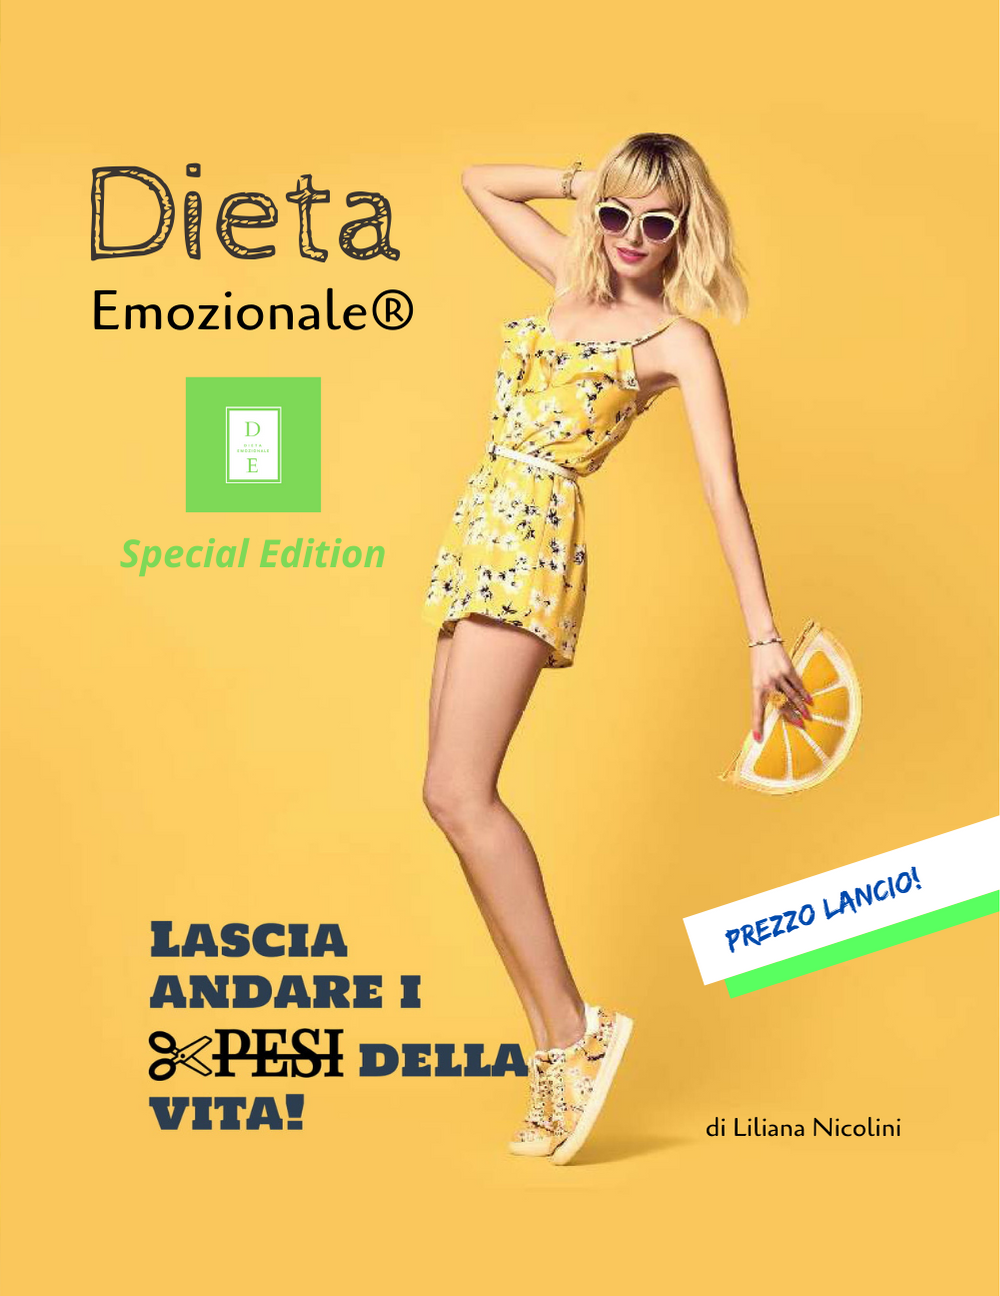 Dieta Emozionale® Lascia andare i pesi della vita di Liliana Nicolini